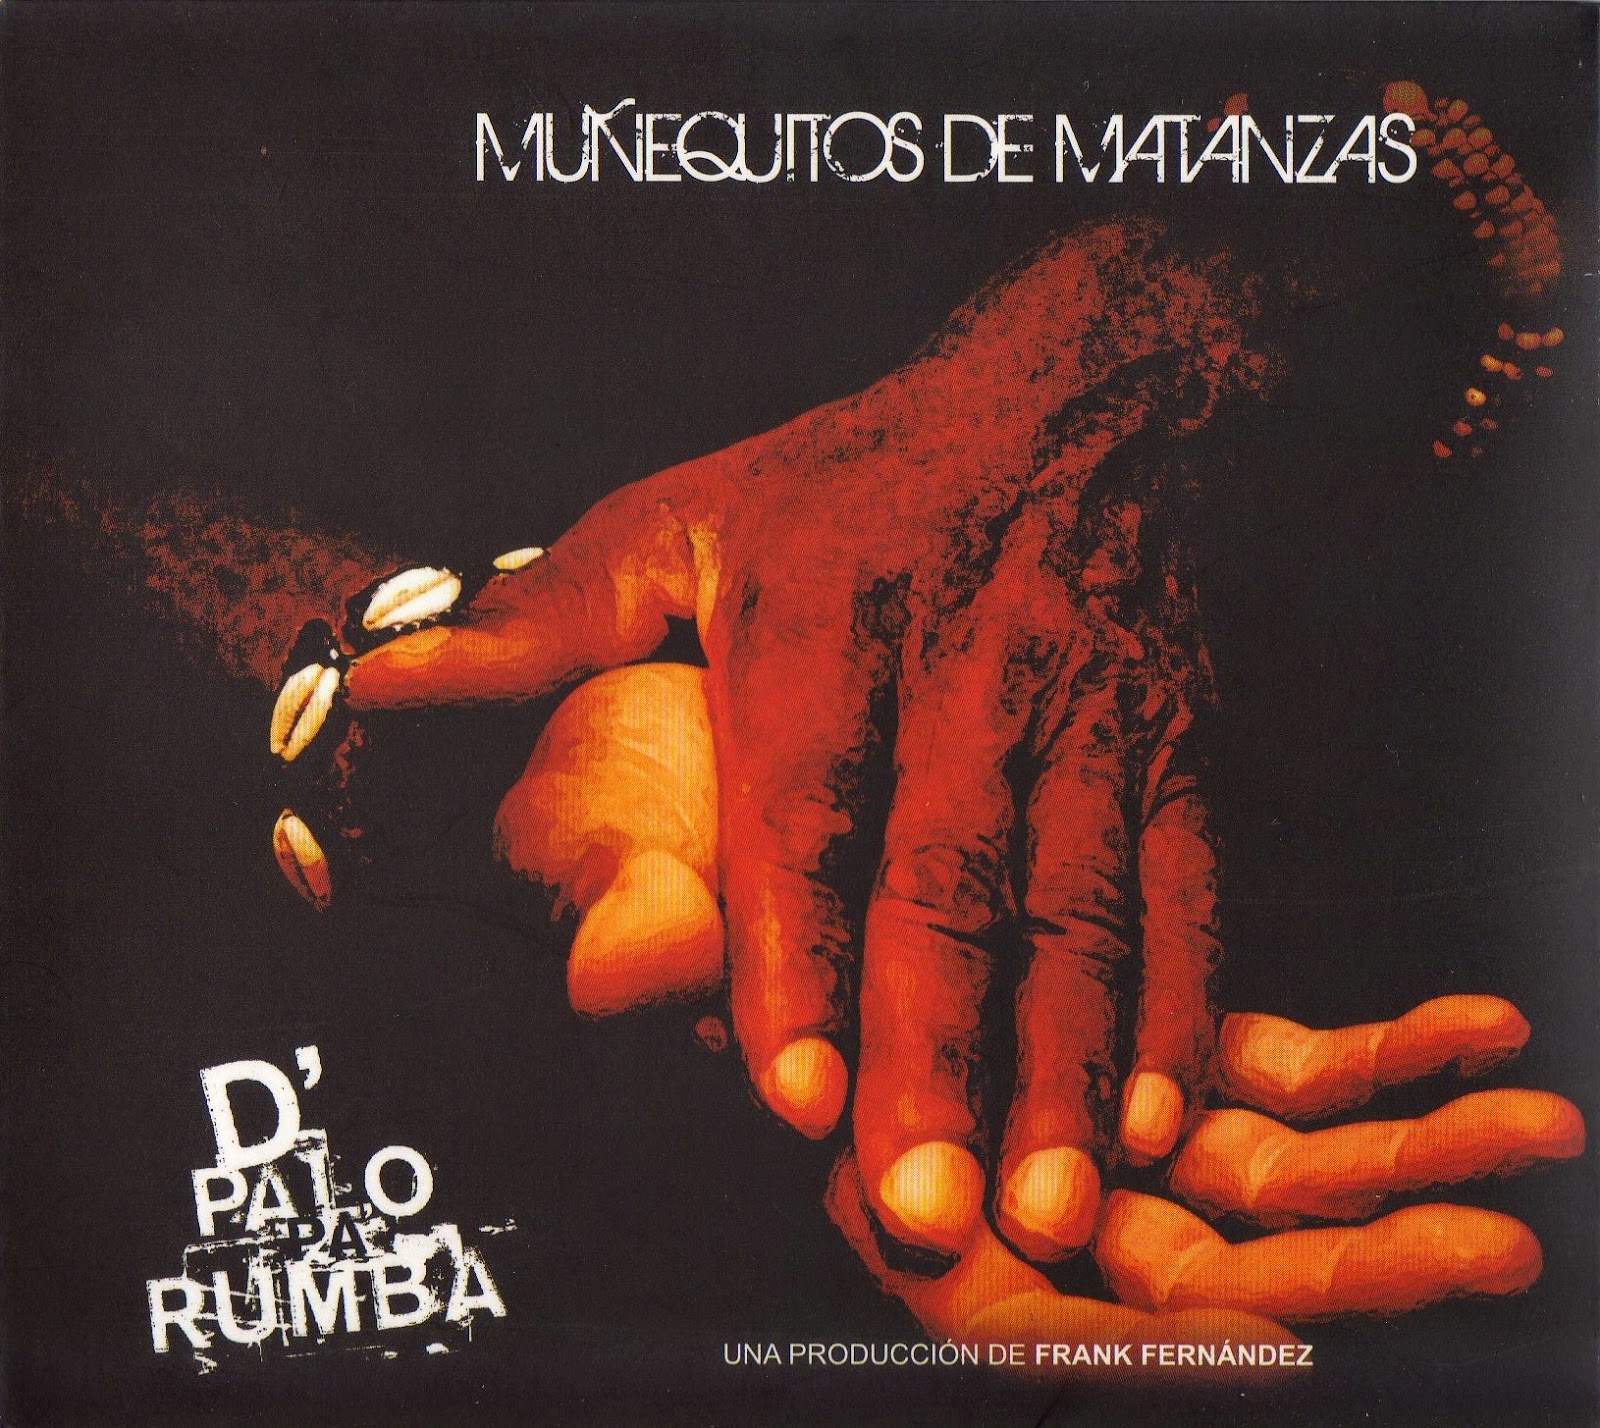  Los Muñequitos de Matanzas - De Palo Pa'Rumba Mu%C3%B1equitos+de+Matanzas+-+2009+-+D%27+palo+pa+rumba+-+Frontal